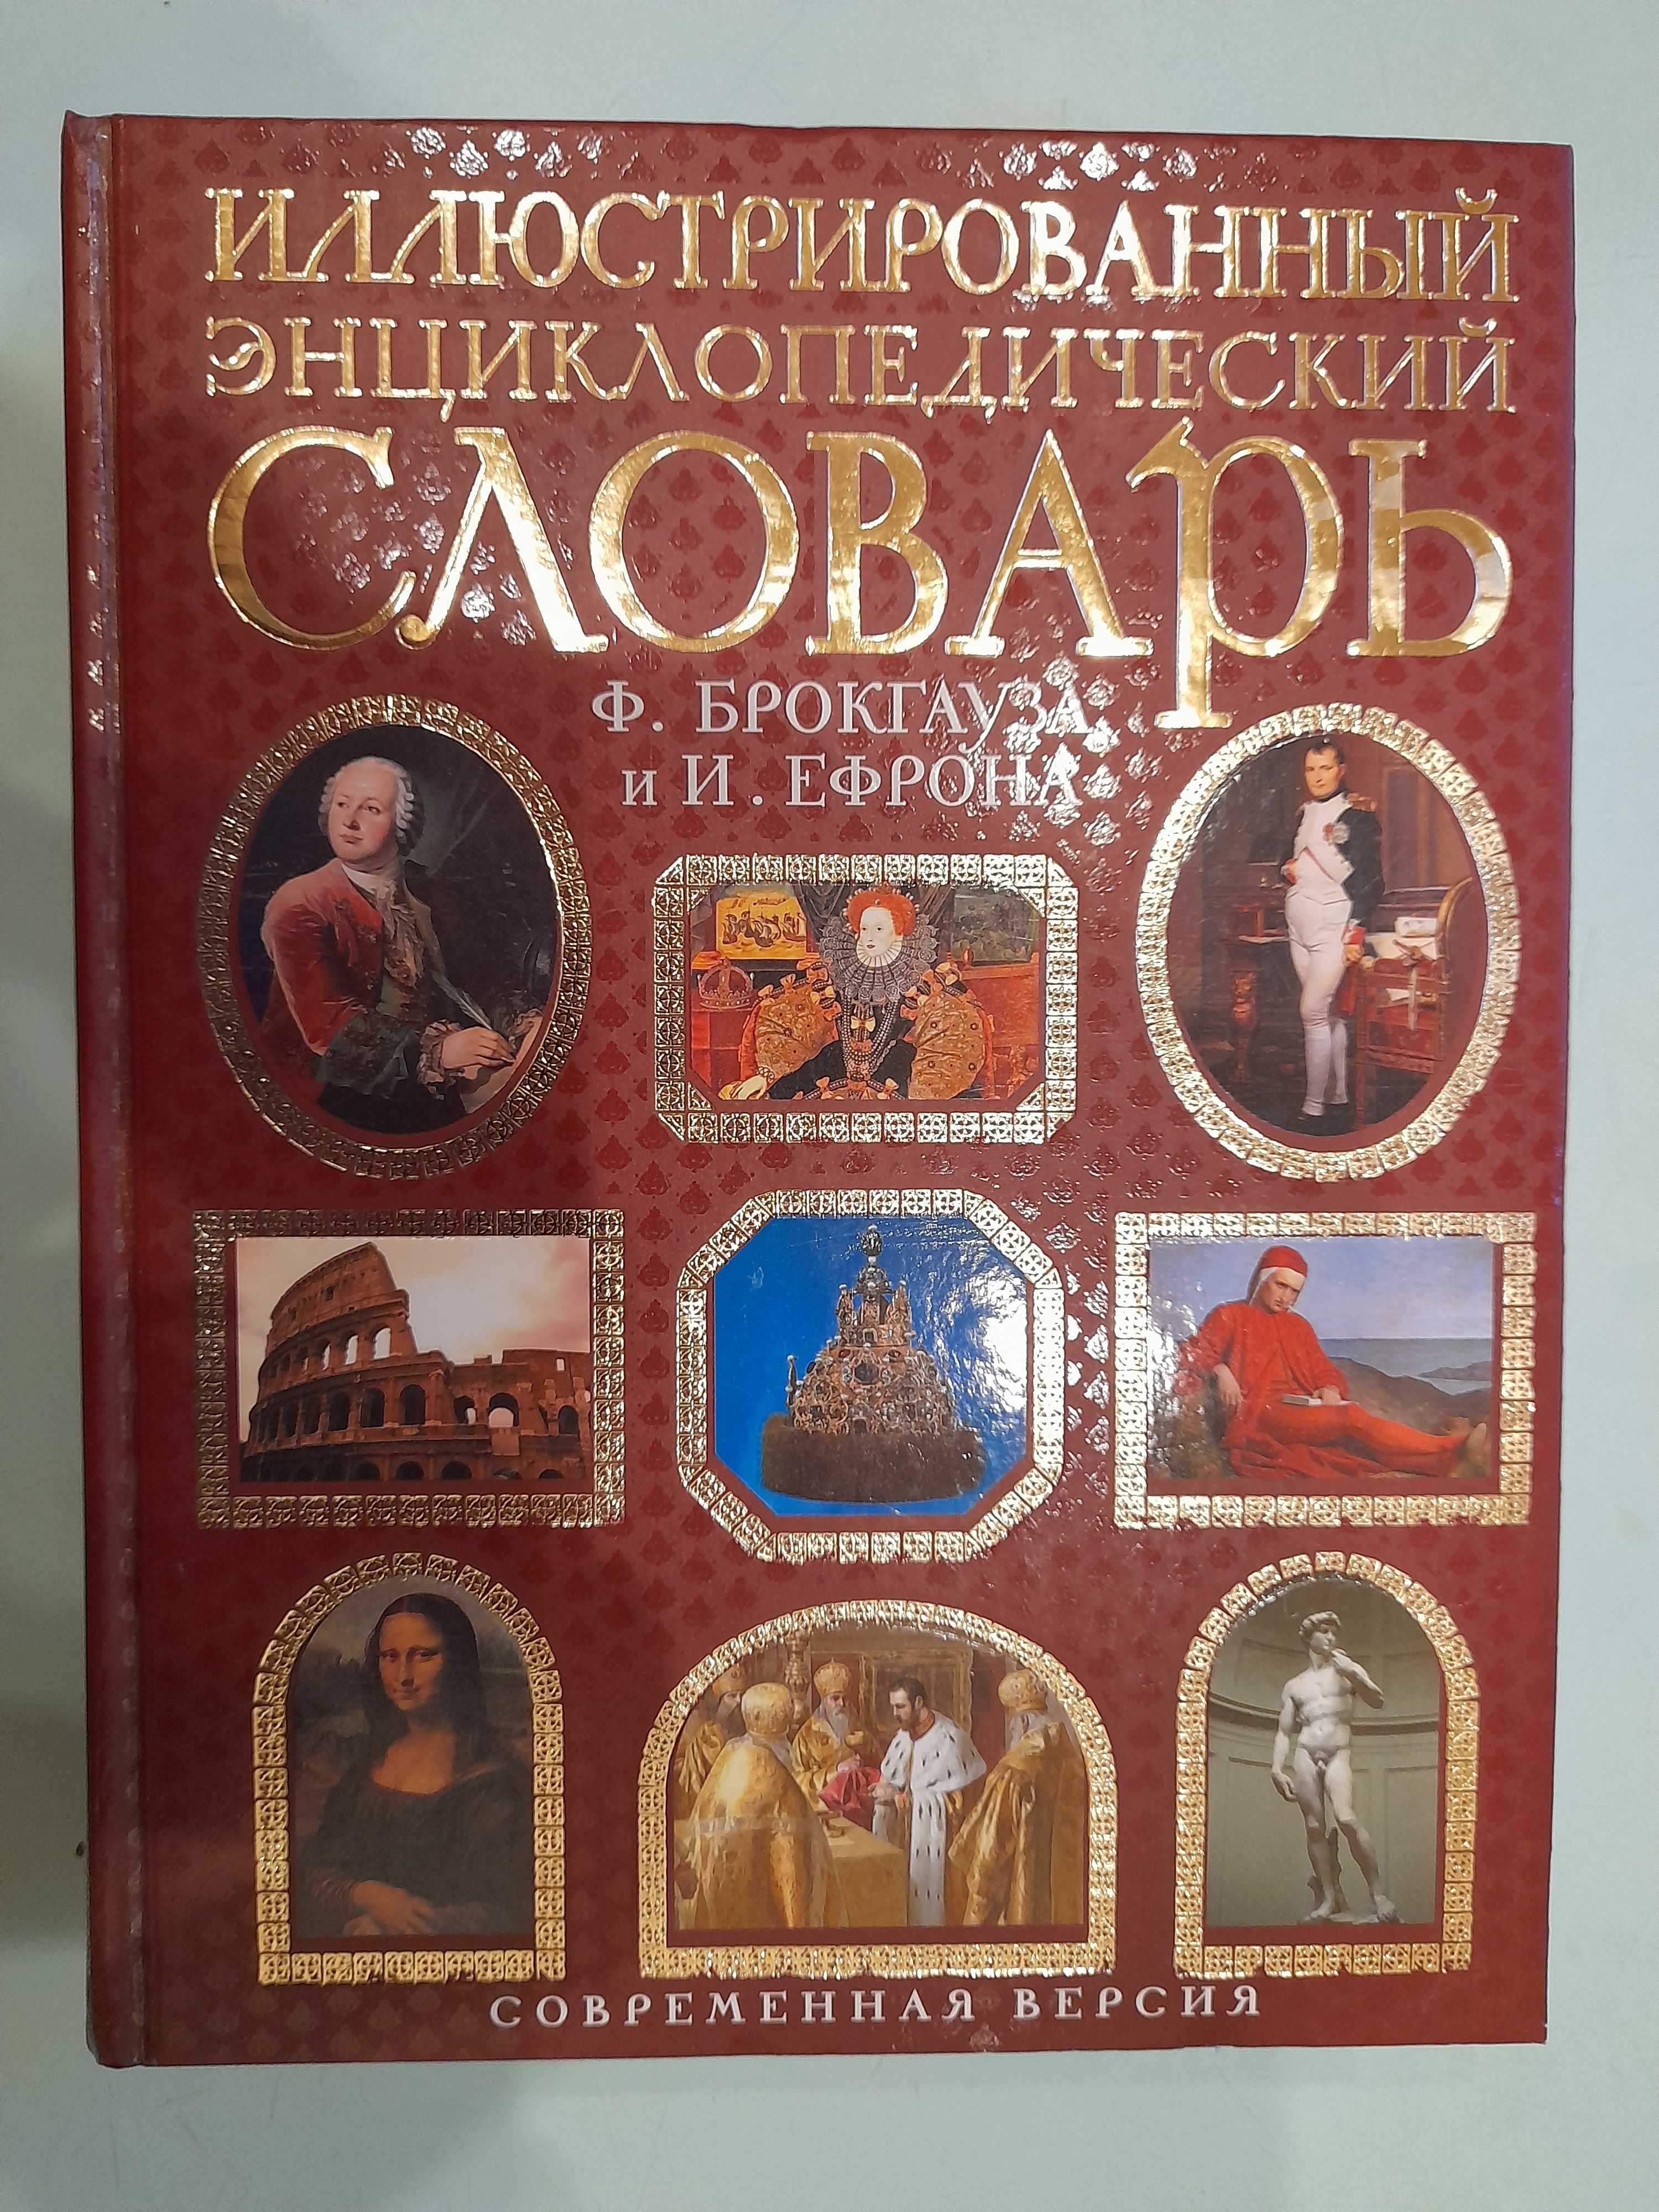 Энциклопедический словарь Брокгауза и Ефрона, 2008 г.